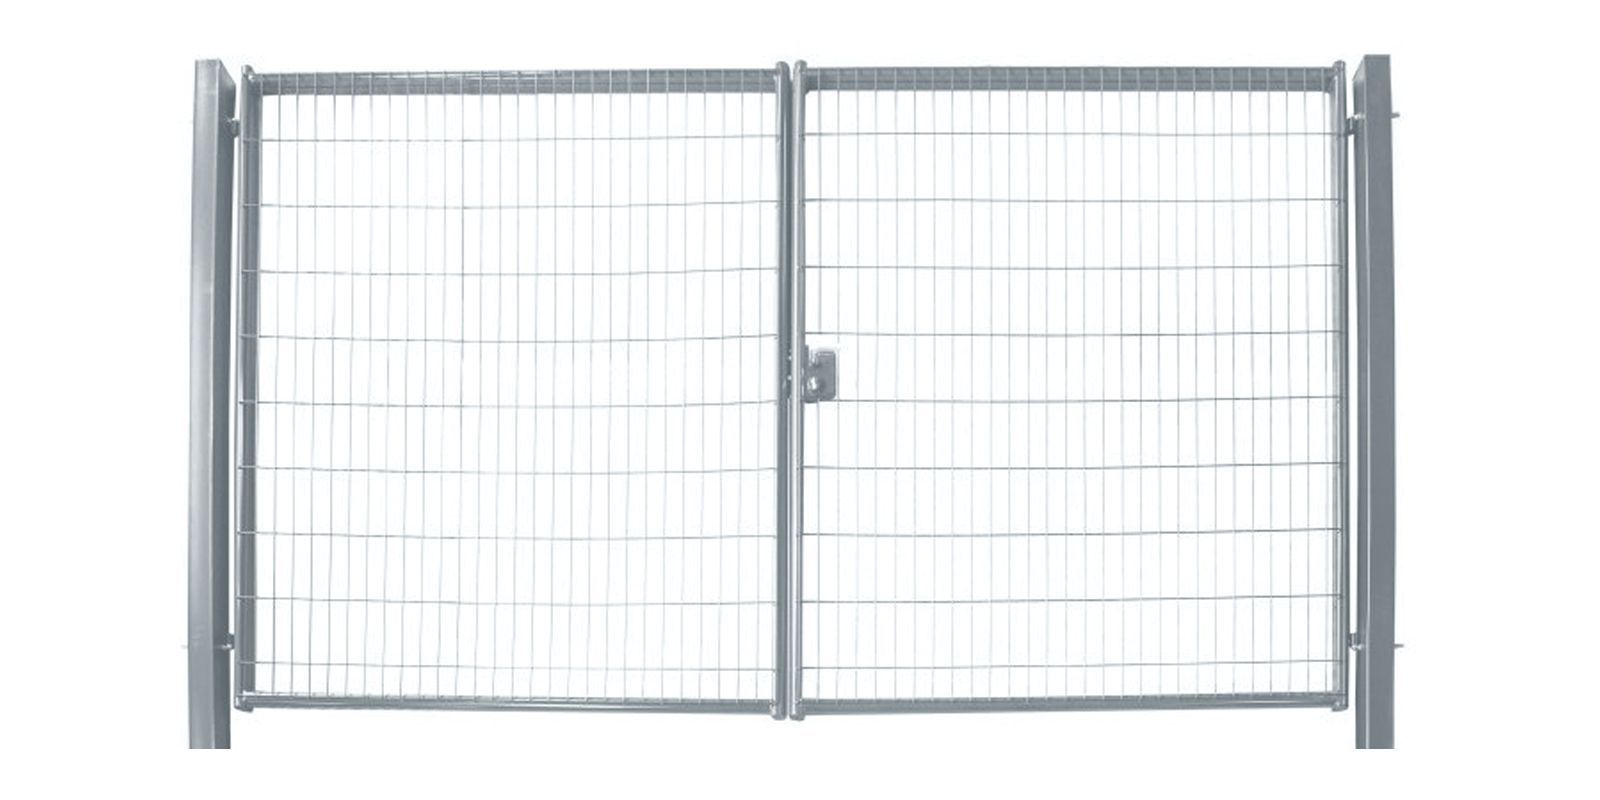 Ворота для панельного ограждения Medium, 1,73 м, ширина 4 м, изображение, фото | Сталь ТД